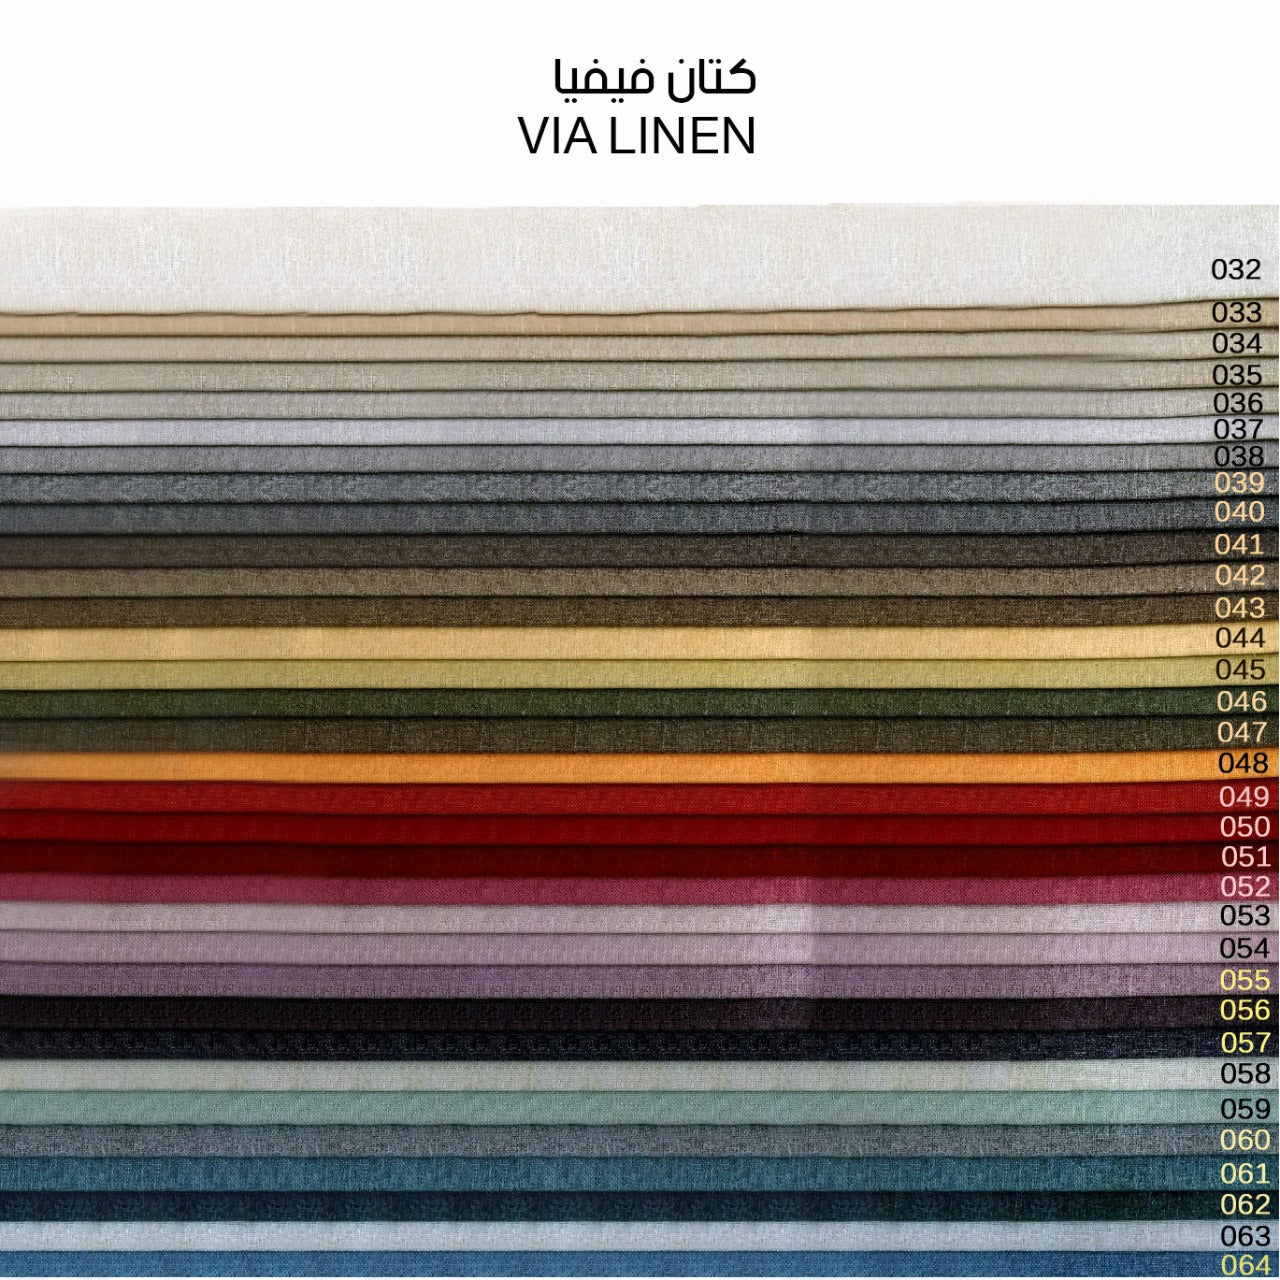 سرير- سحارة ميكانيزم -ألوان متعددة- مقاسات متعددة - WS029